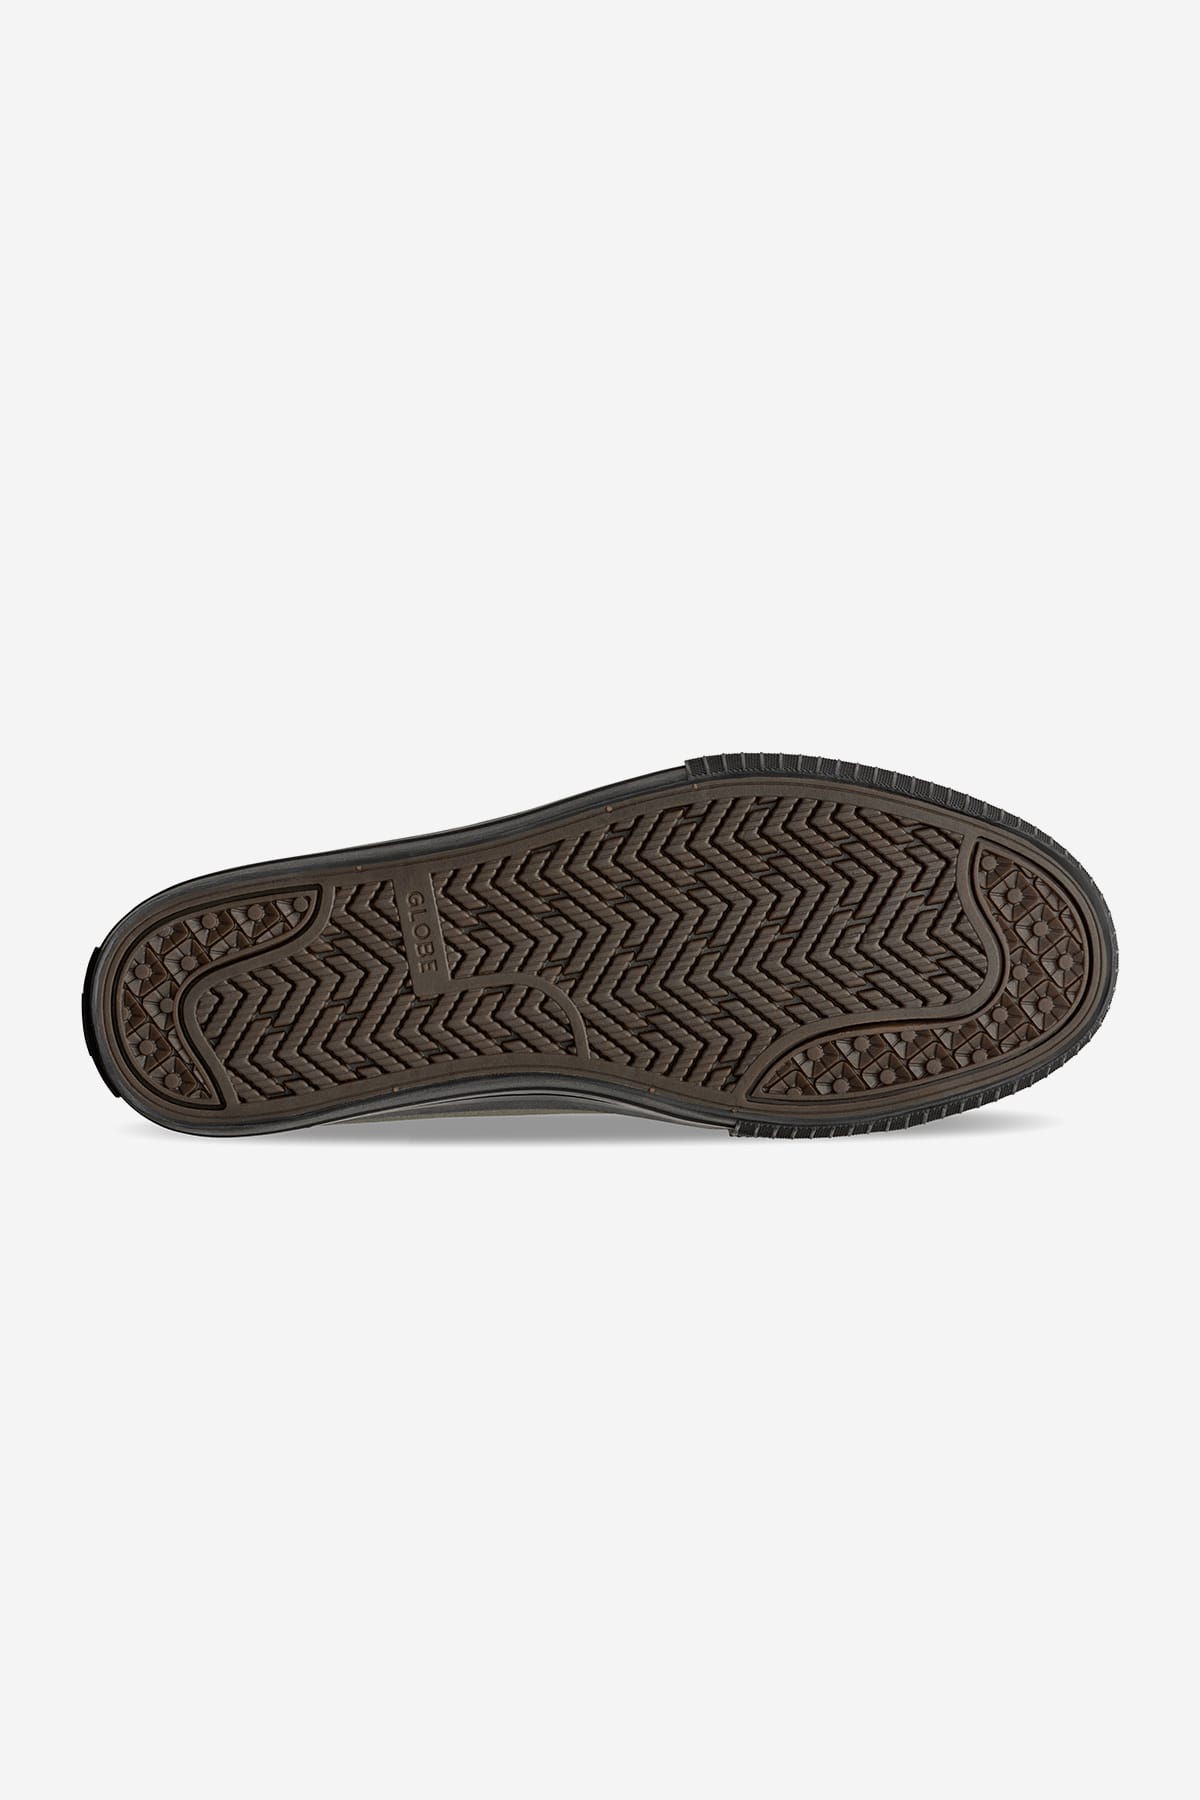 Globe - Gillette - Scuro Olive/Nero - skateboard Shoes